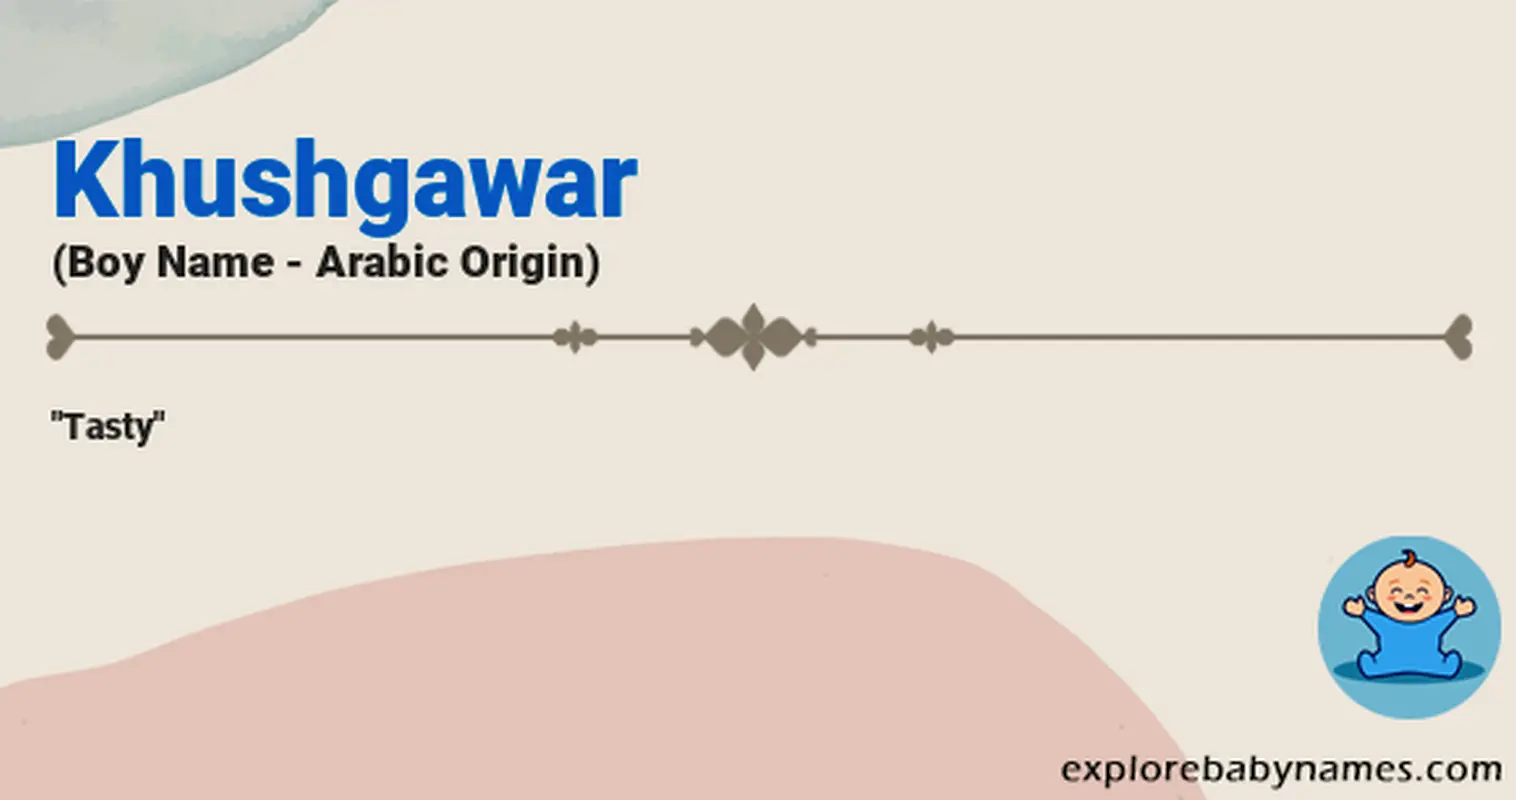 Meaning of Khushgawar